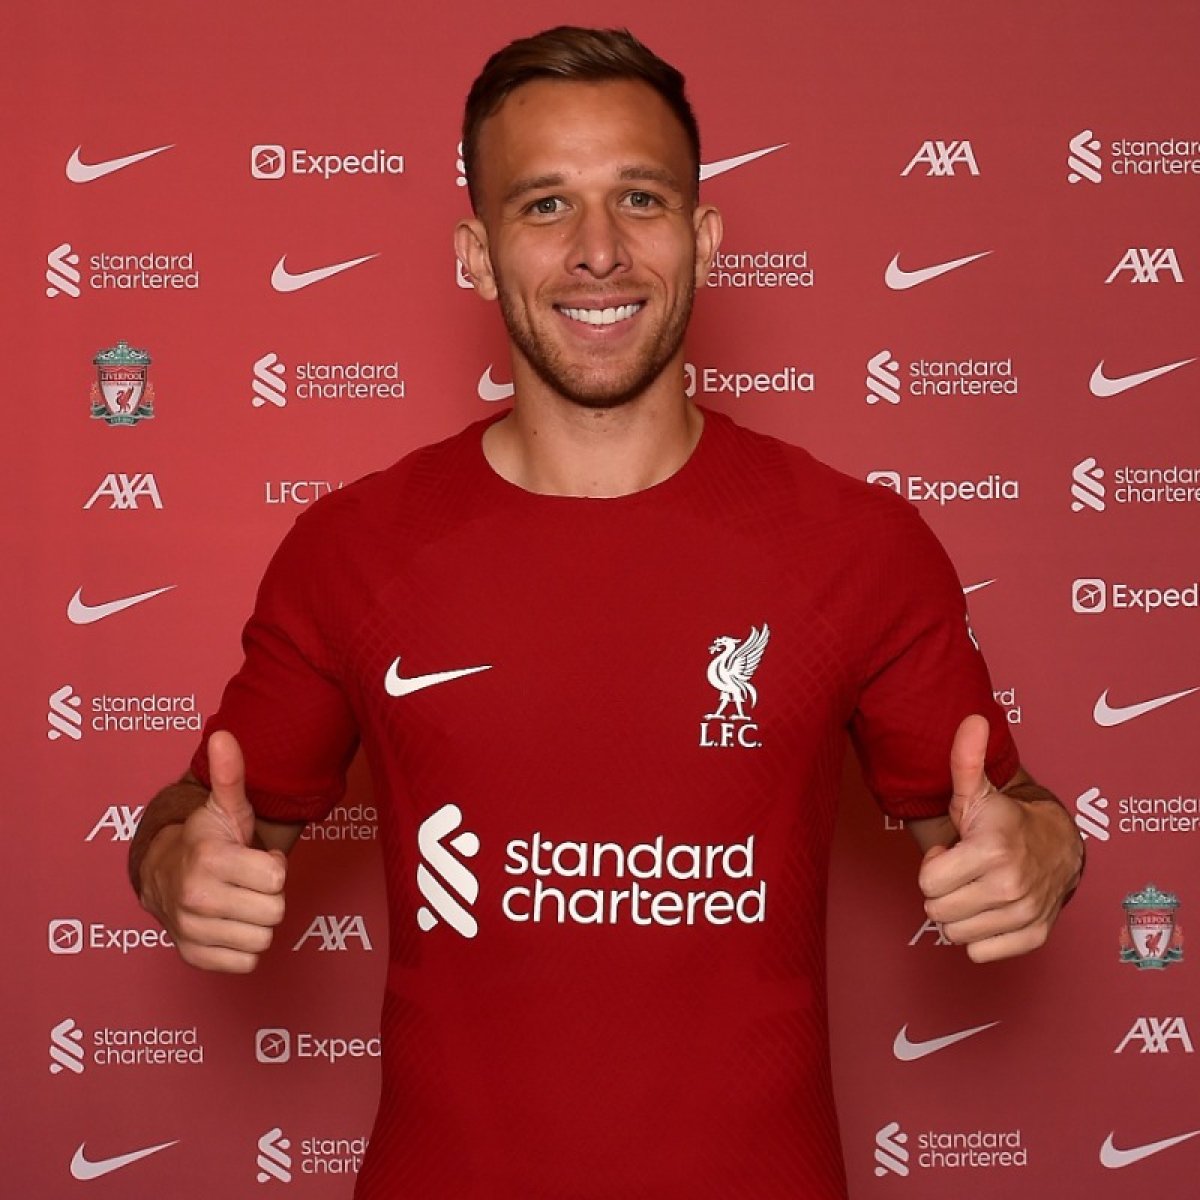 Liverpool, Arthur u kiraladı #1